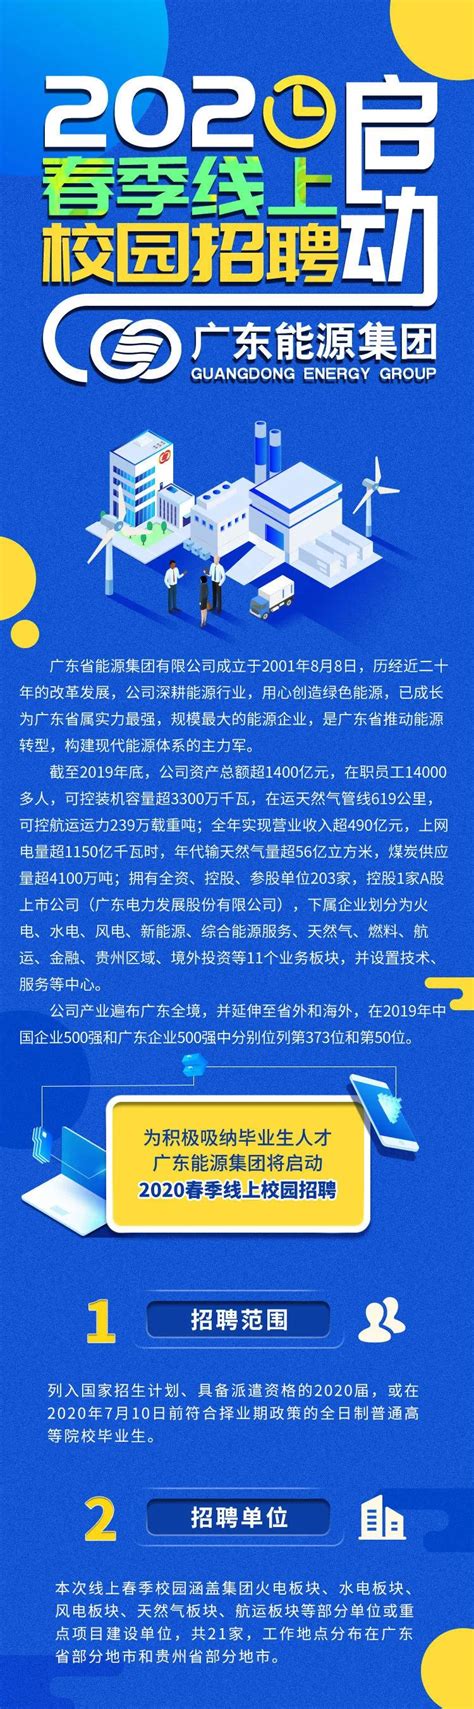 广东能源集团2020春季线上校园招聘启动